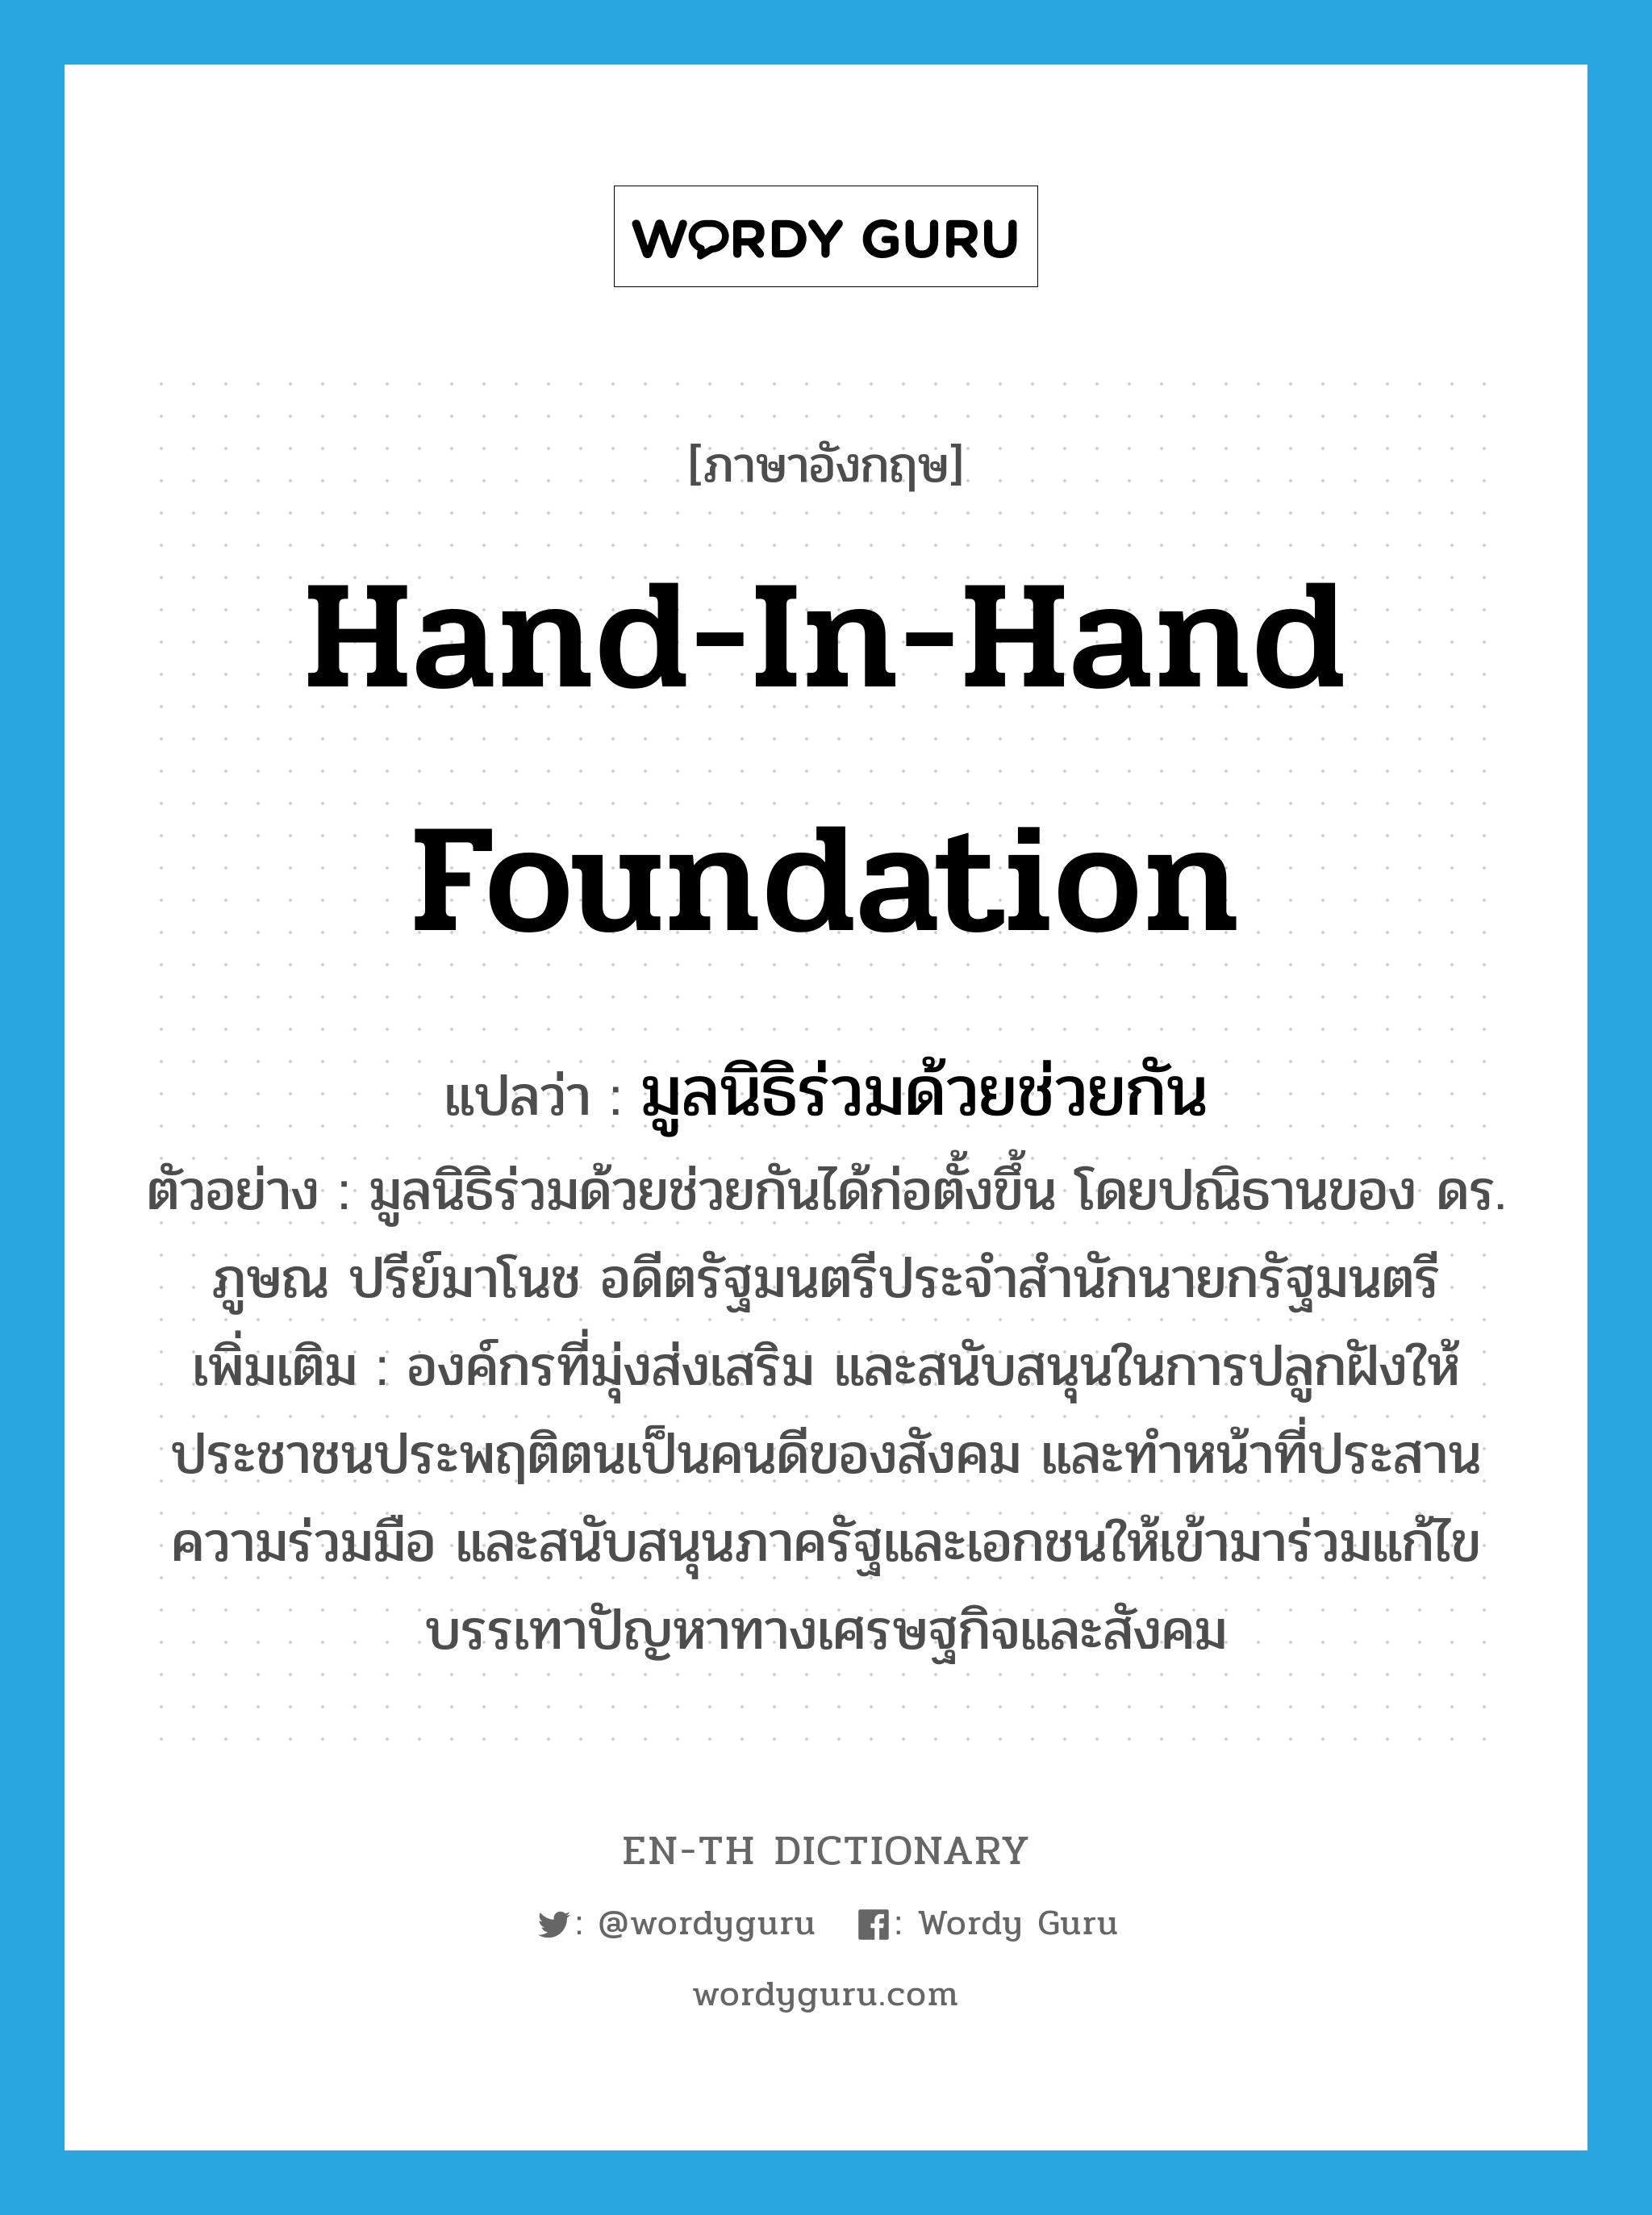 มูลนิธิร่วมด้วยช่วยกัน ภาษาอังกฤษ?, คำศัพท์ภาษาอังกฤษ มูลนิธิร่วมด้วยช่วยกัน แปลว่า Hand-In-Hand Foundation ประเภท N ตัวอย่าง มูลนิธิร่วมด้วยช่วยกันได้ก่อตั้งขึ้น โดยปณิธานของ ดร. ภูษณ ปรีย์มาโนช อดีตรัฐมนตรีประจำสำนักนายกรัฐมนตรี เพิ่มเติม องค์กรที่มุ่งส่งเสริม และสนับสนุนในการปลูกฝังให้ประชาชนประพฤติตนเป็นคนดีของสังคม และทำหน้าที่ประสานความร่วมมือ และสนับสนุนภาครัฐและเอกชนให้เข้ามาร่วมแก้ไข บรรเทาปัญหาทางเศรษฐกิจและสังคม หมวด N